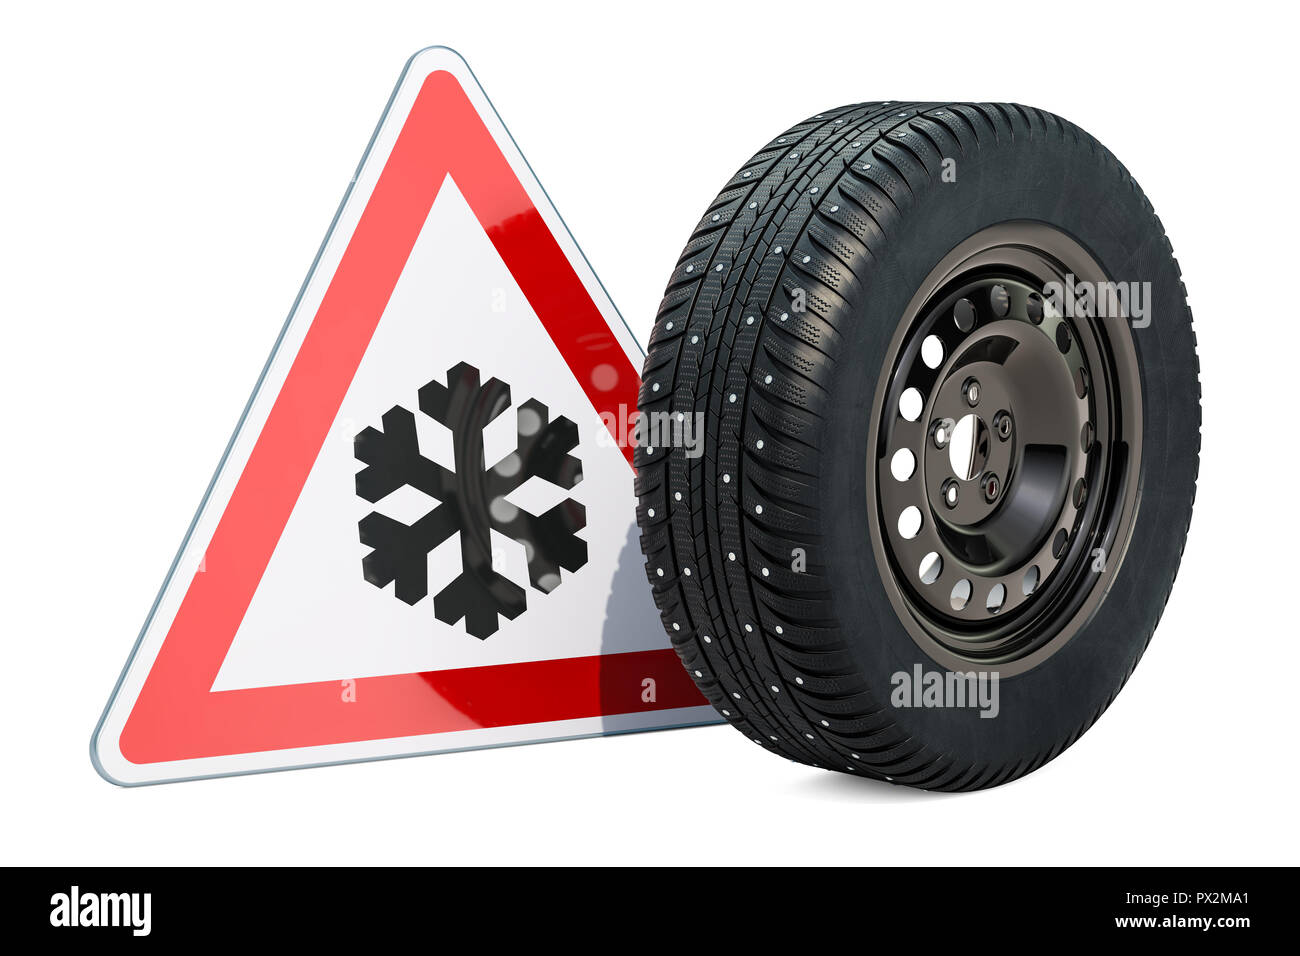 Coche con ruedas de invierno neumáticos para nieve con clavos y cuídese de hielo o nieve, señales de carretera. 3D rendering Foto de stock